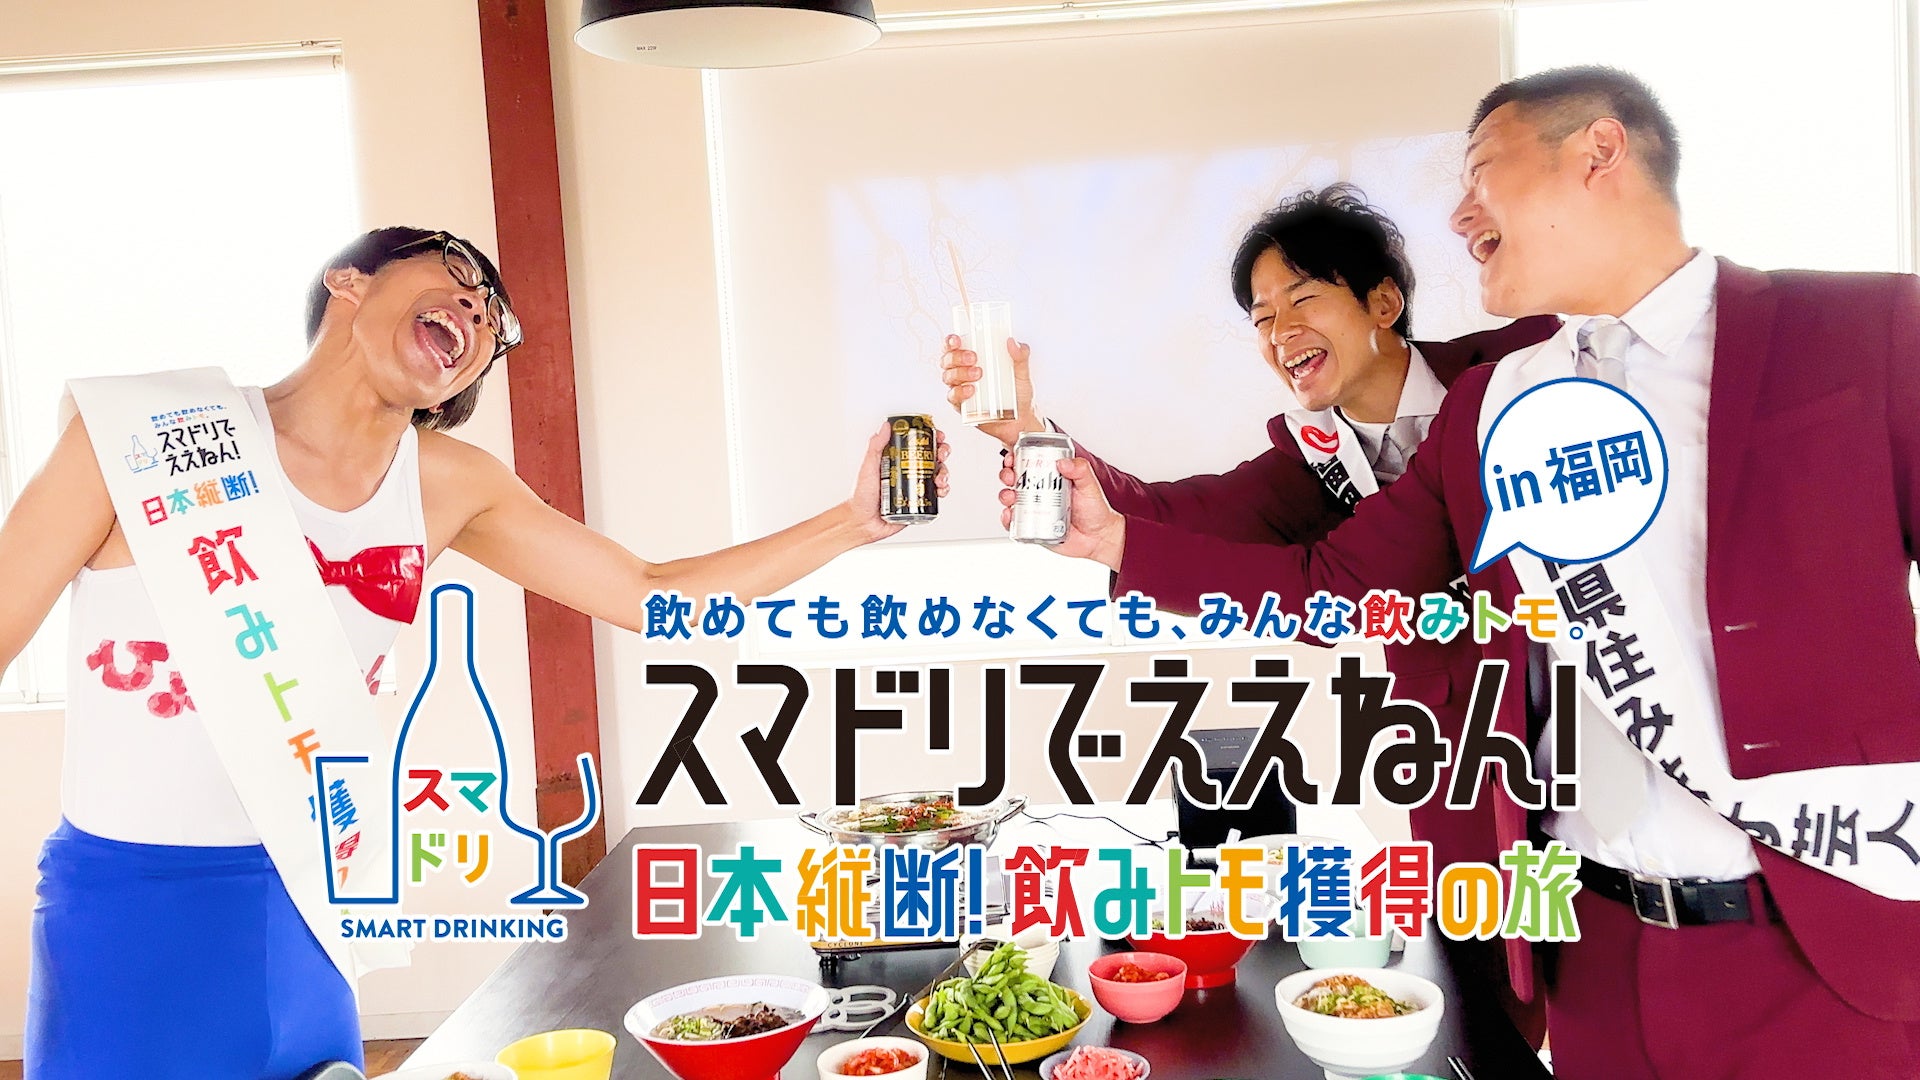 日本ワイナリーアワード協議会は、第6回授賞式・発表会を6月2日（金）に開催、素晴らしい日本ワインをうみだす造り手を讃えます。また、5つ星ワイナリーの代表ワインの有料試飲会も行います。